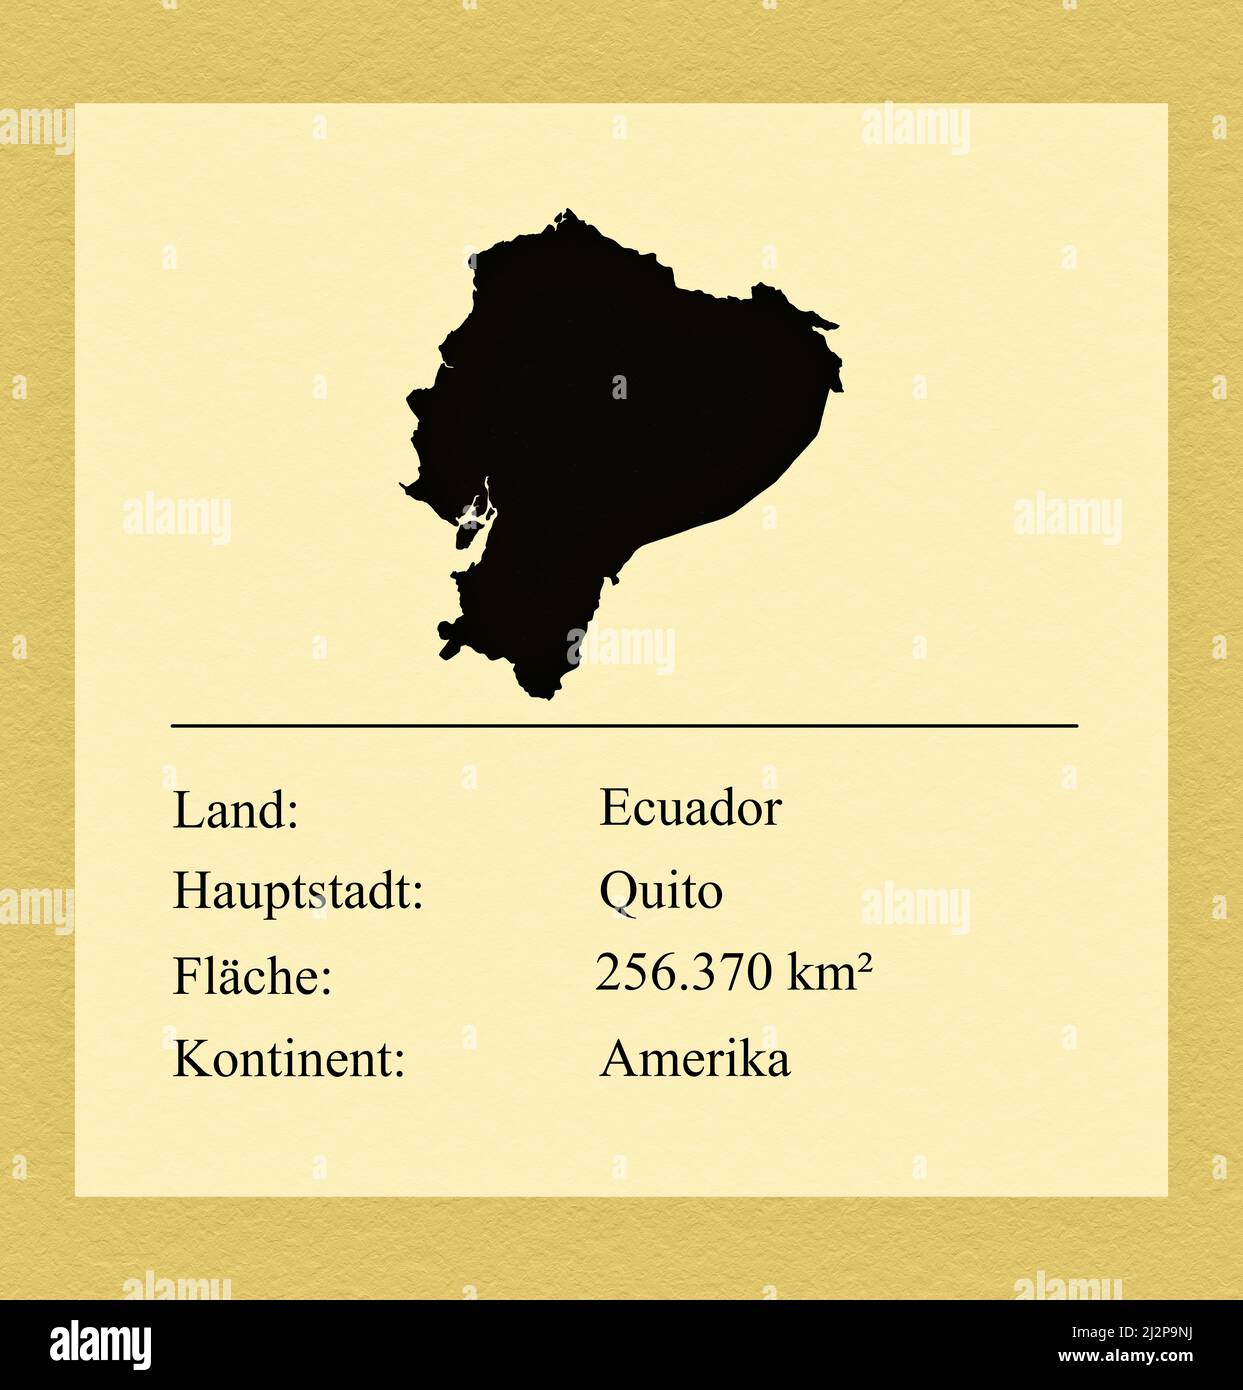 Umrisse des Landes Ecuador, darunter ein kleiner Steckbrief mit Ländernamen, Hauptstadt, Fläche und Kontinent Foto de stock